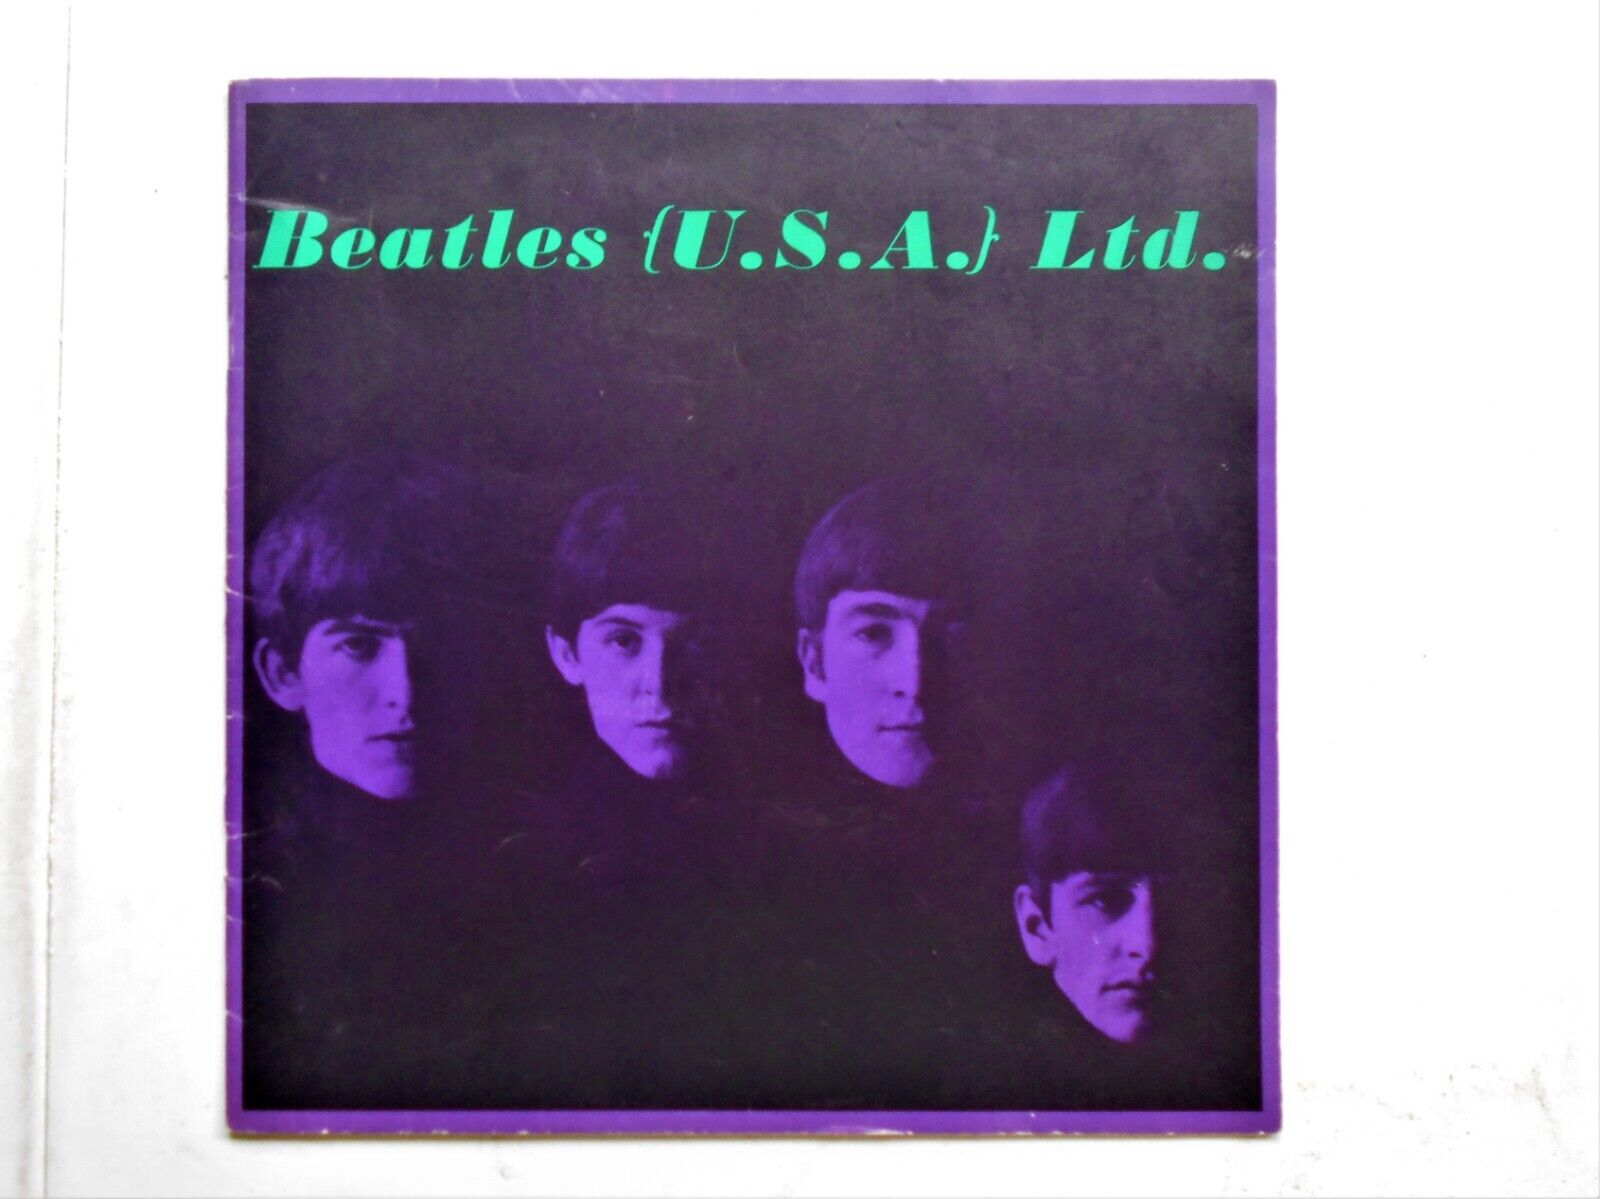 THE BEATLES (U.S.A). LTD. 1964 CONCERT TOUR PROGAM.